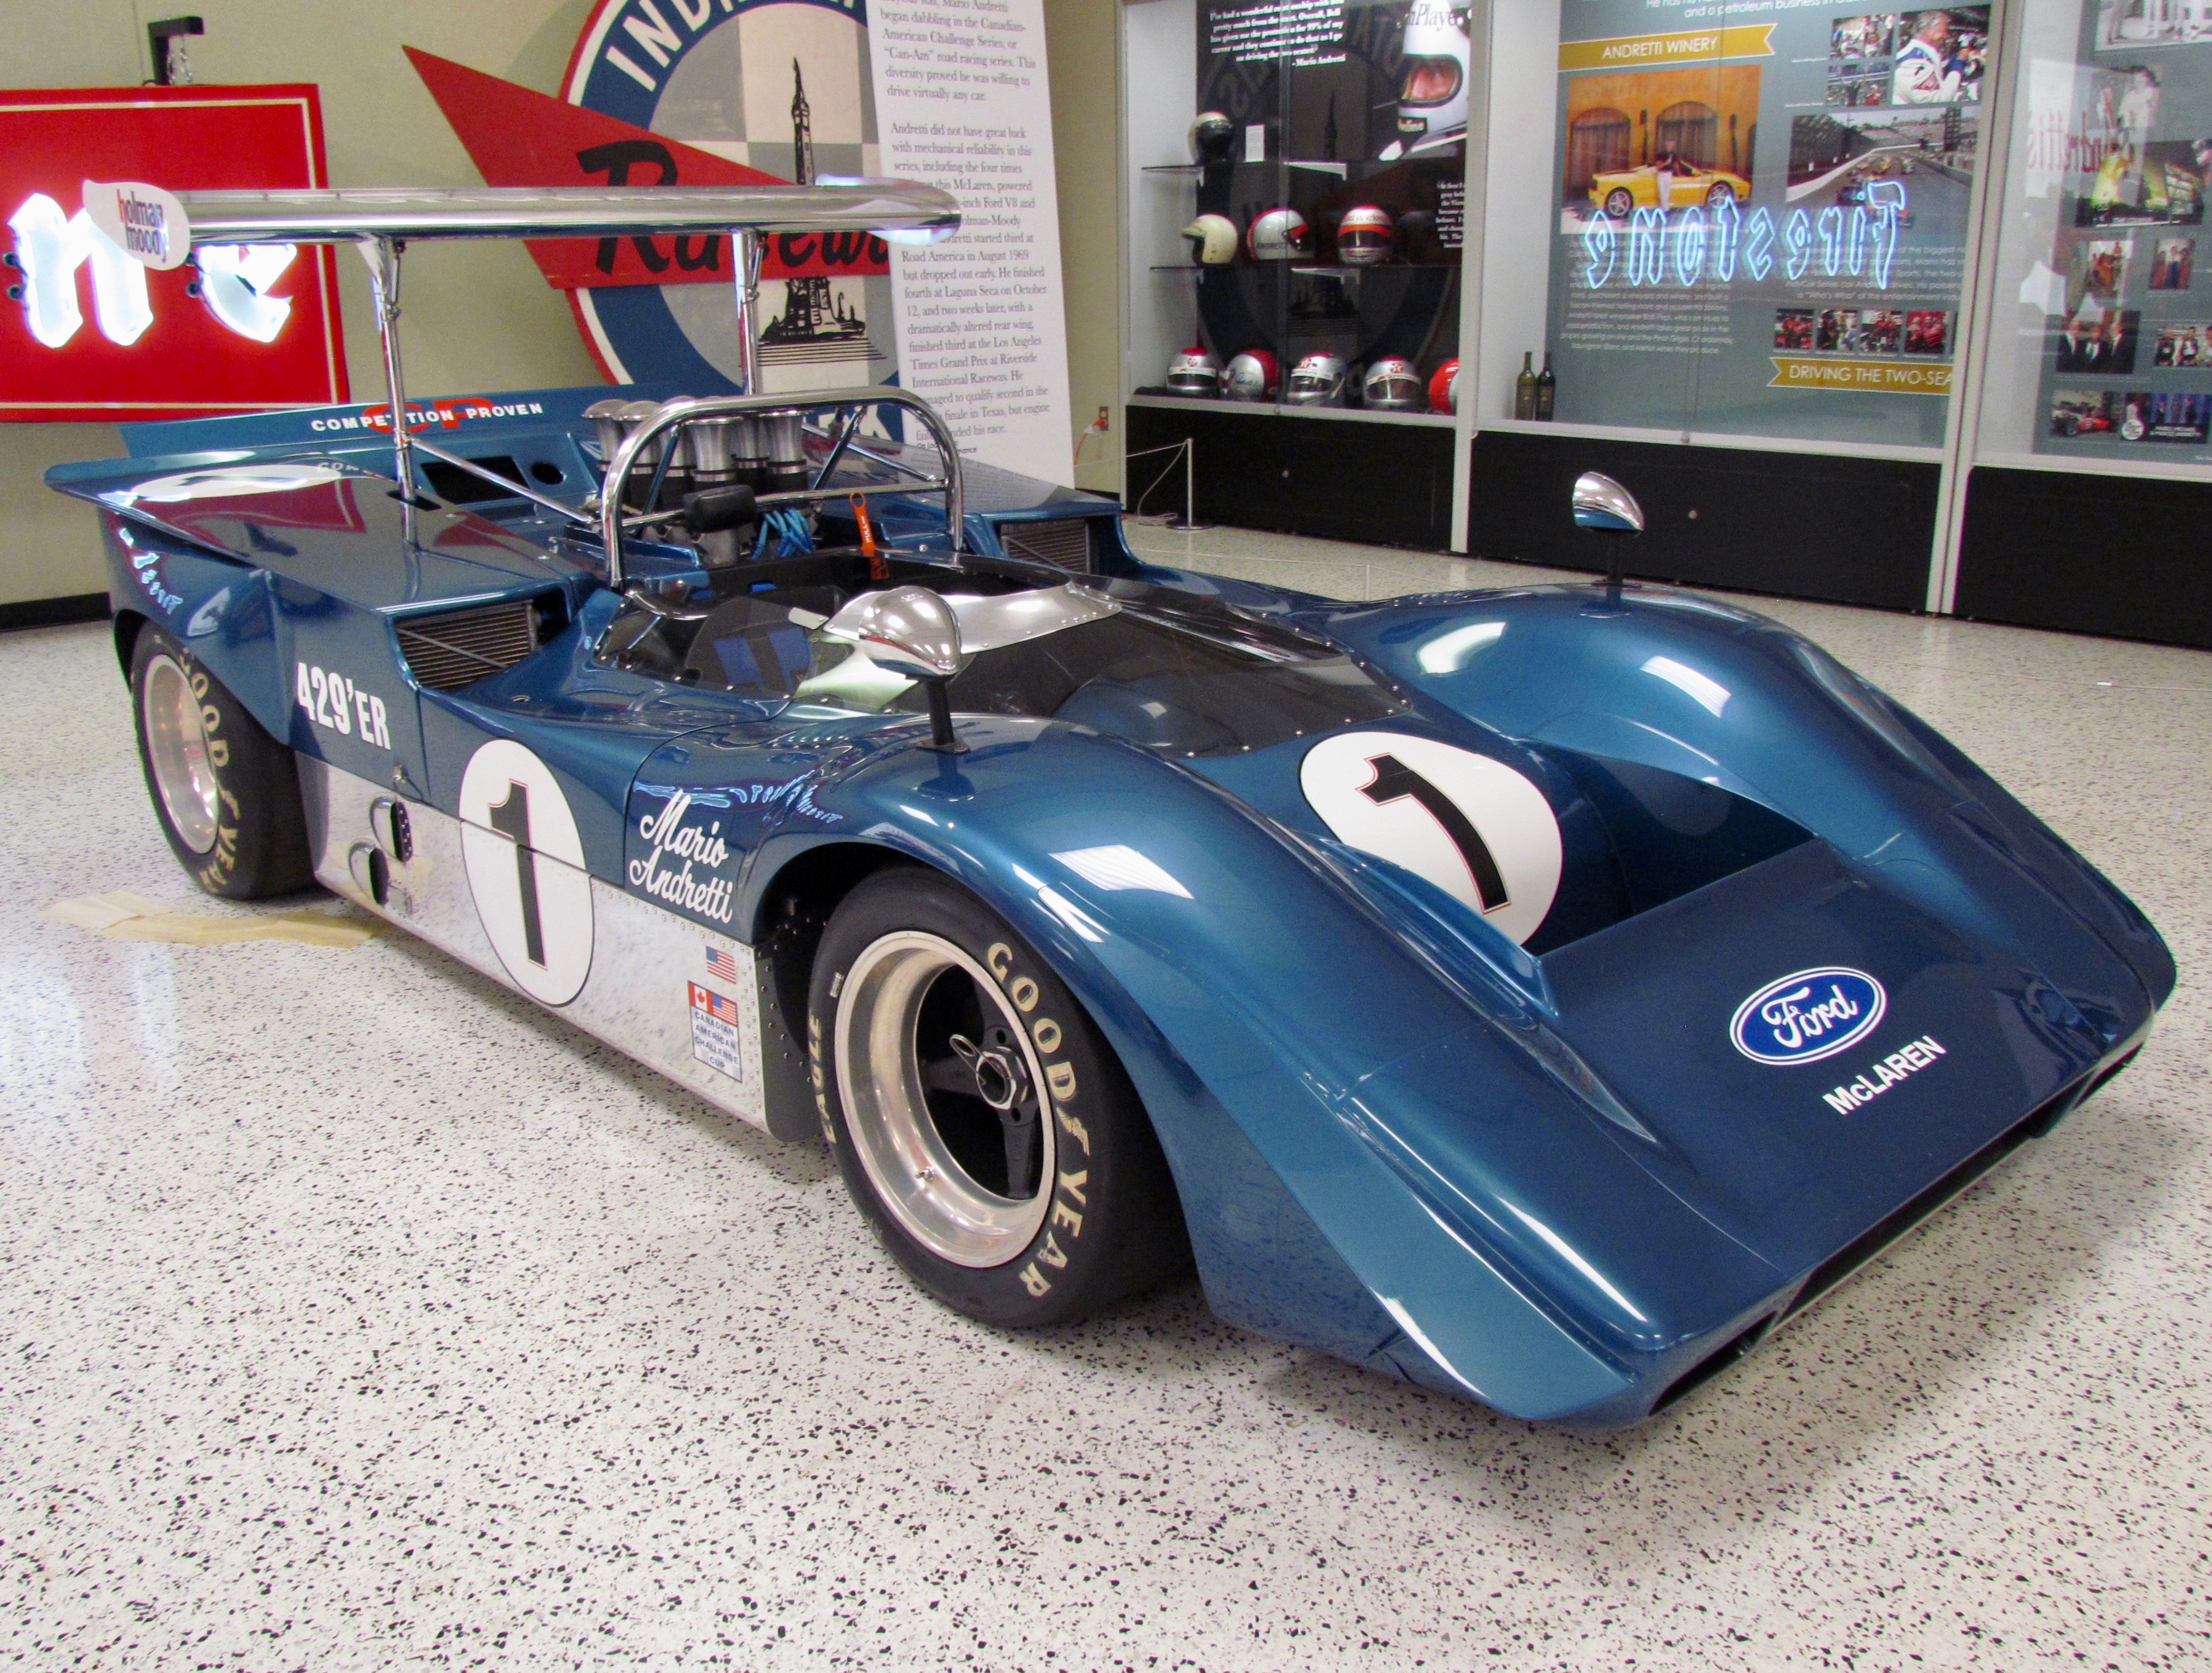 Indy museum showcases Mario Andretti’s winning ways